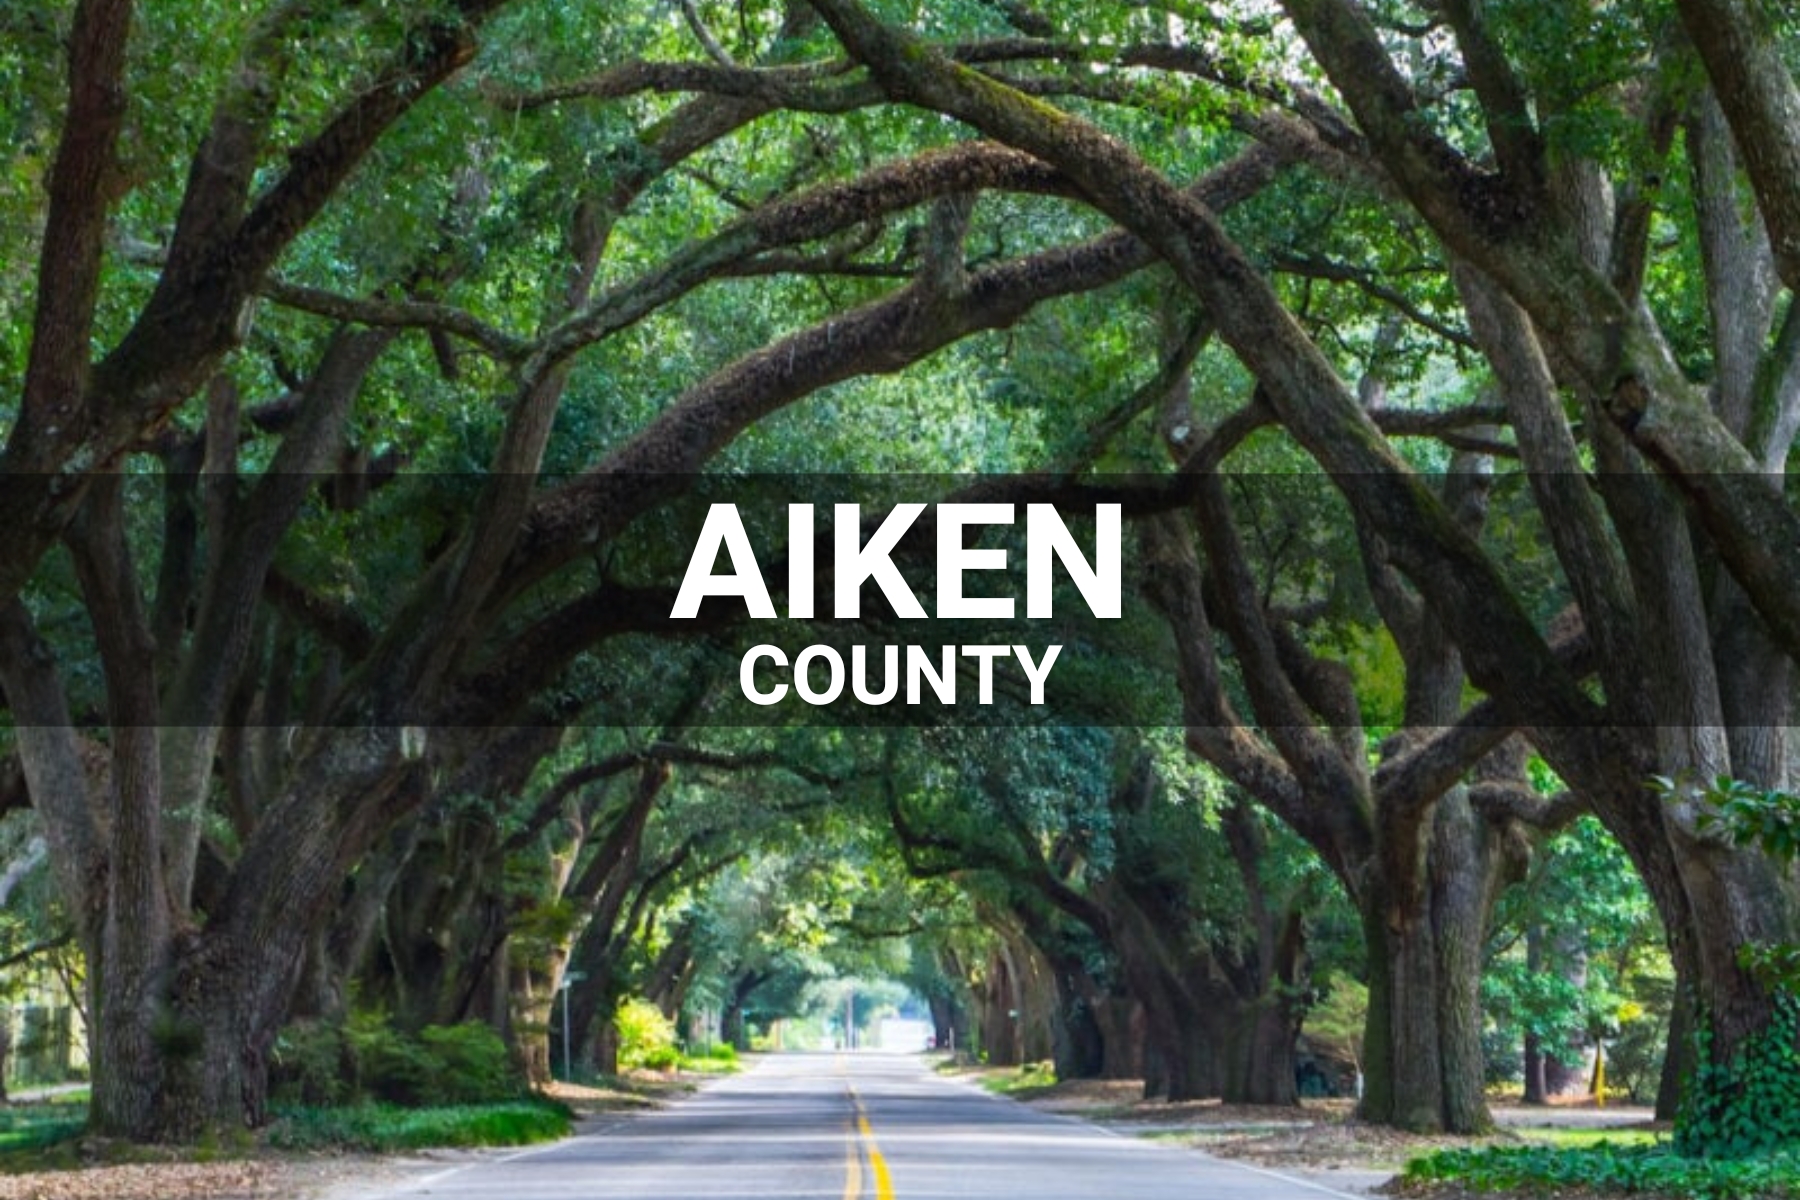 Aiken County